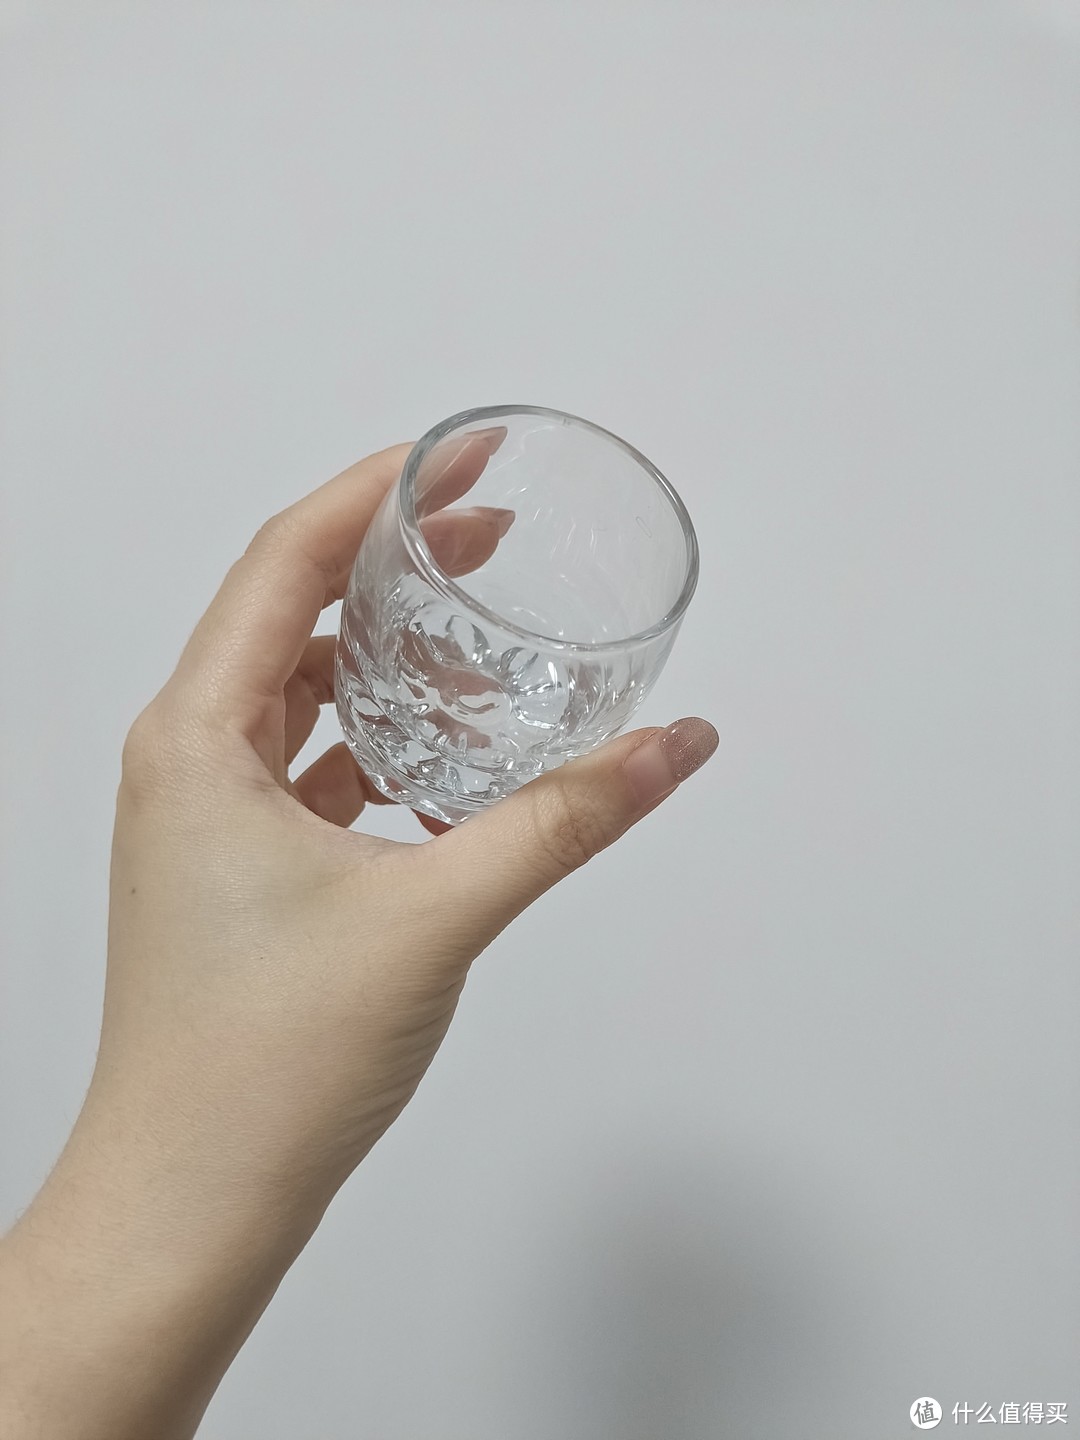 想要喝烈酒，还得用这种小号玻璃杯，既复古又好用。